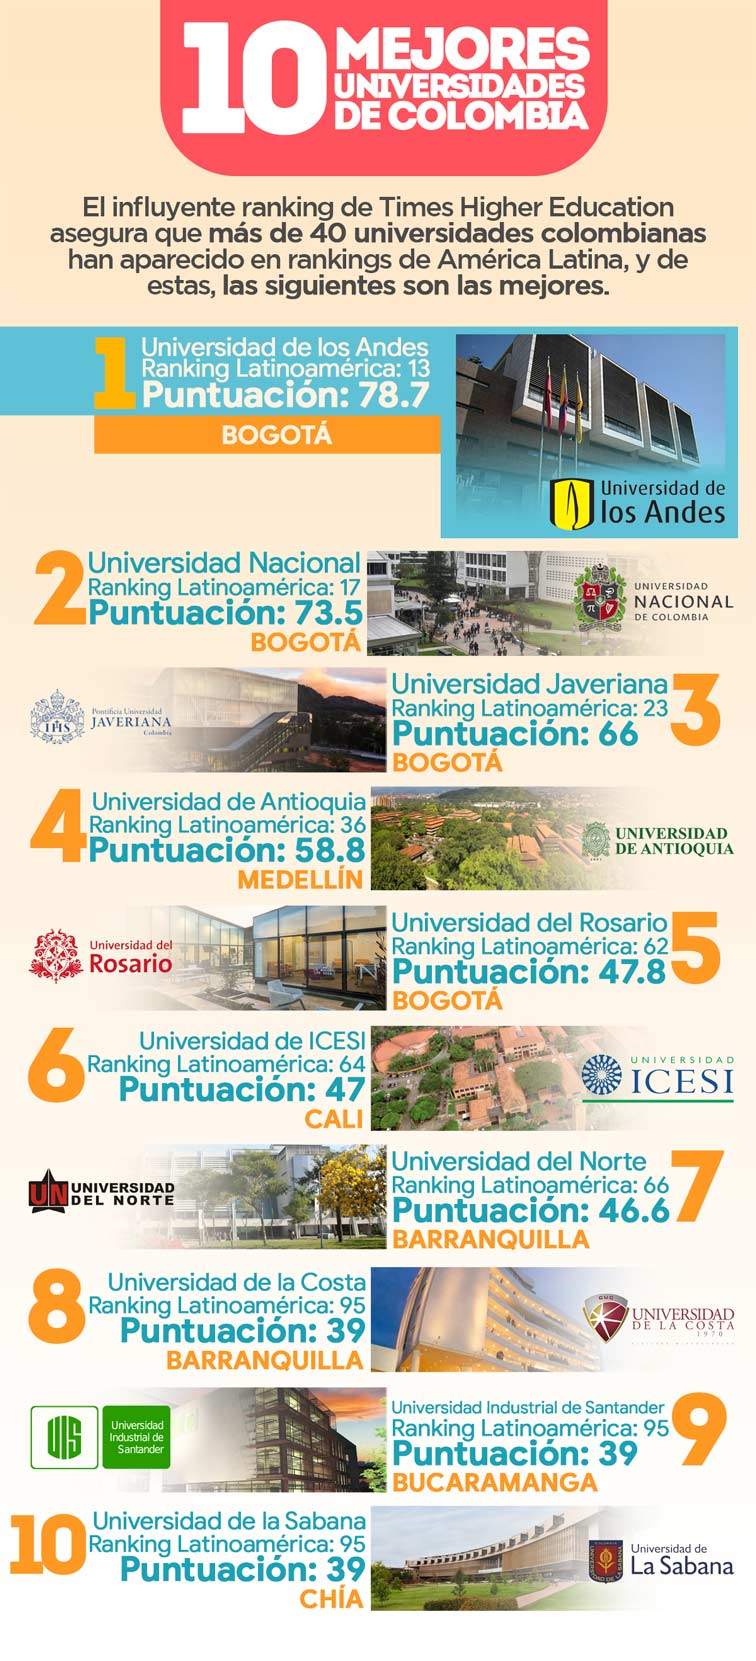 Las mejores universidades de Colombia según el ranking Times Higher Education